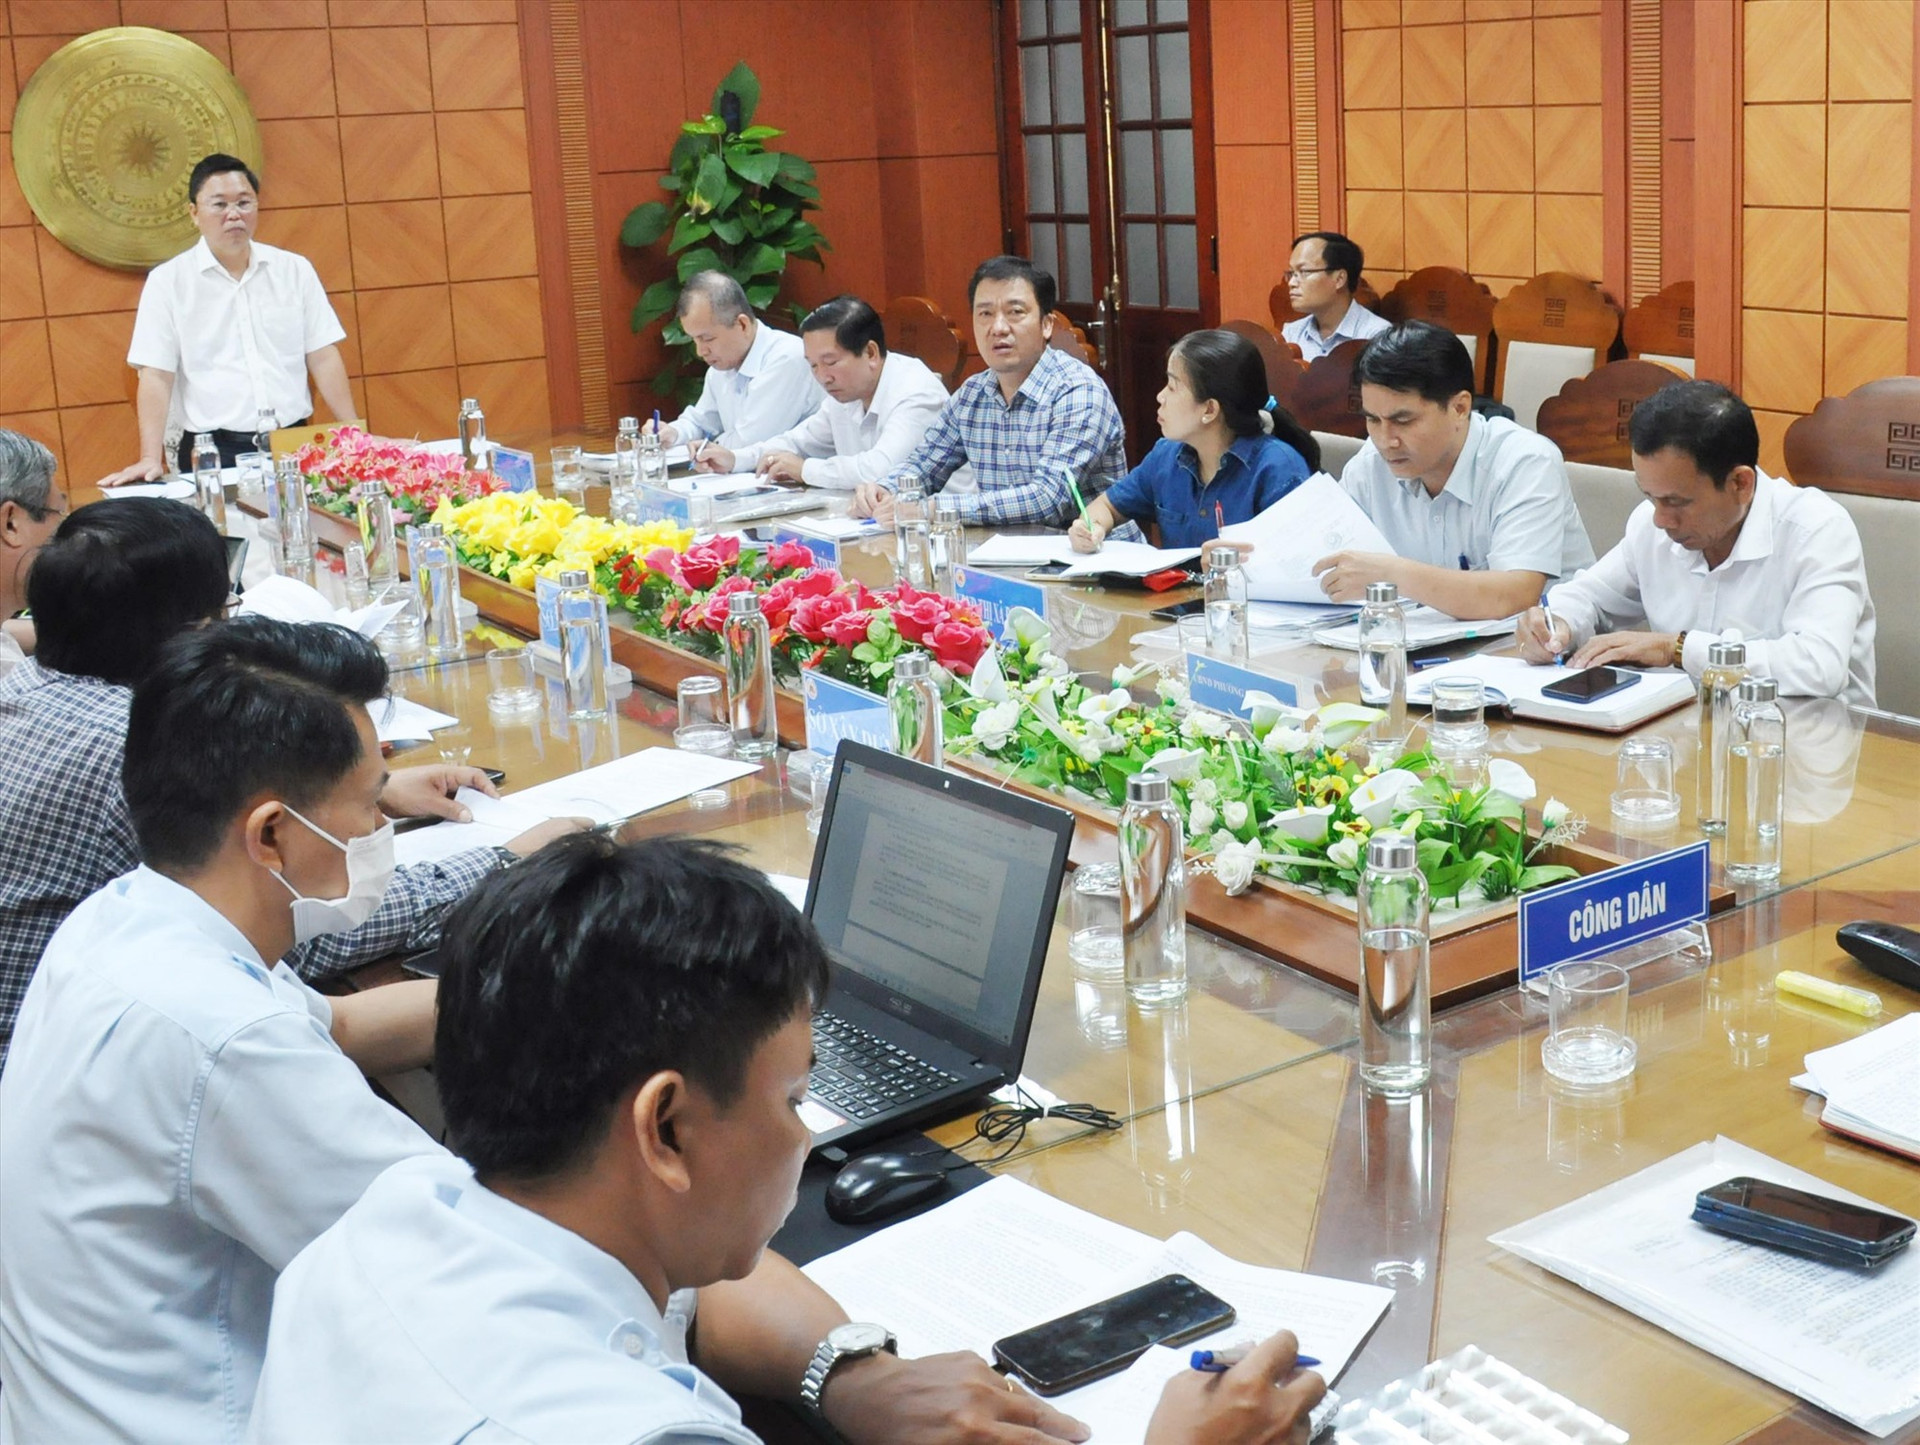 Chủ tịch UBND tỉnh Lê Trí Thanh chủ trì buổi đối thoại xử lý đơn khiếu nại liên quan đến việc giao đất ở Điện Bàn trước khi ban hành quyết định giải quyết khiếu nại lần 2. Ảnh: N.Đ